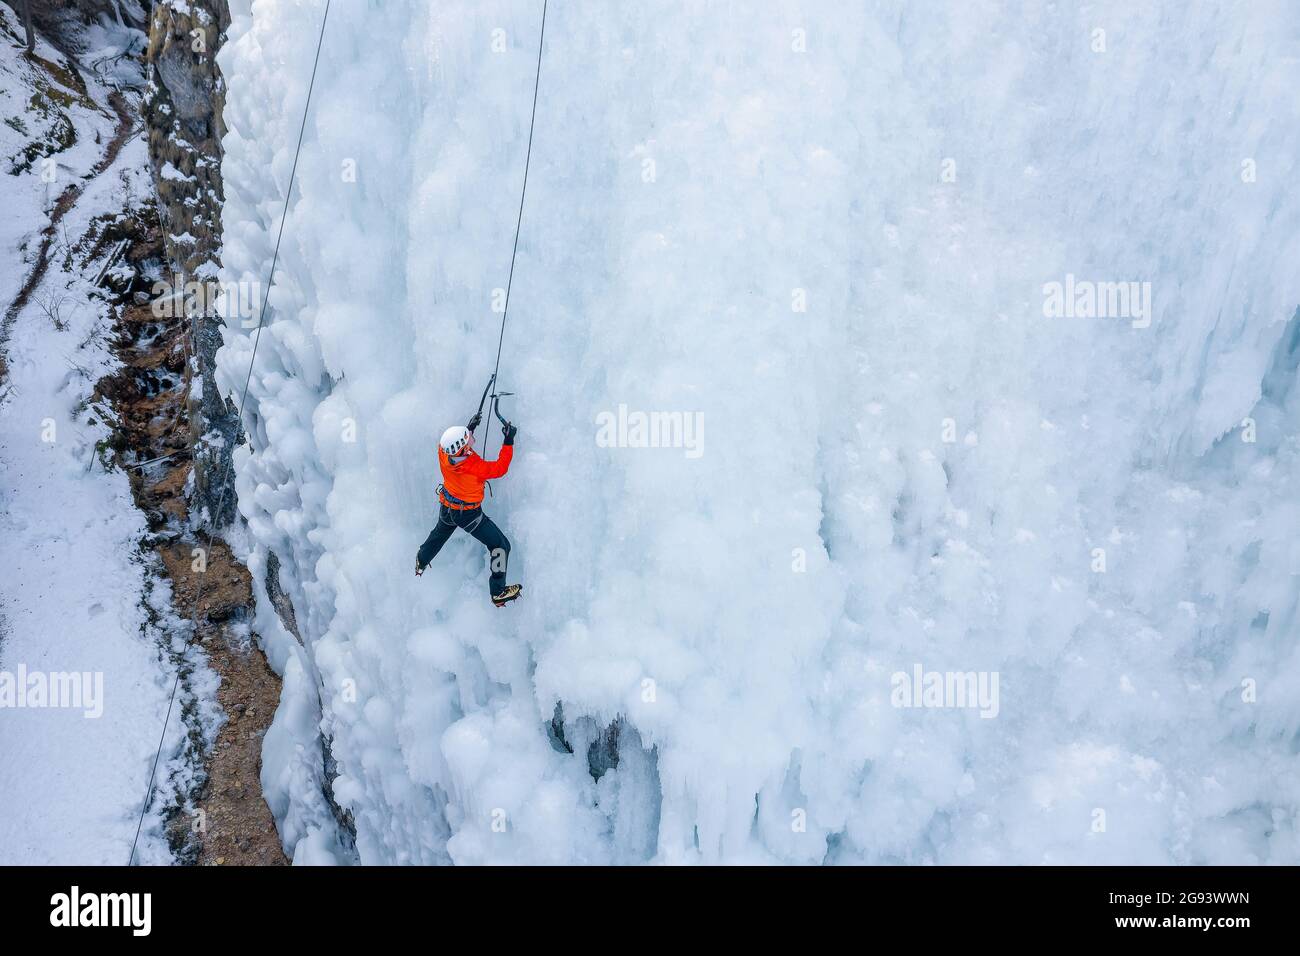 L'athlète masculin monte la falaise couverte de glace, balançant la hache de glace et en utilisant des crampons pour prendre un pied Banque D'Images